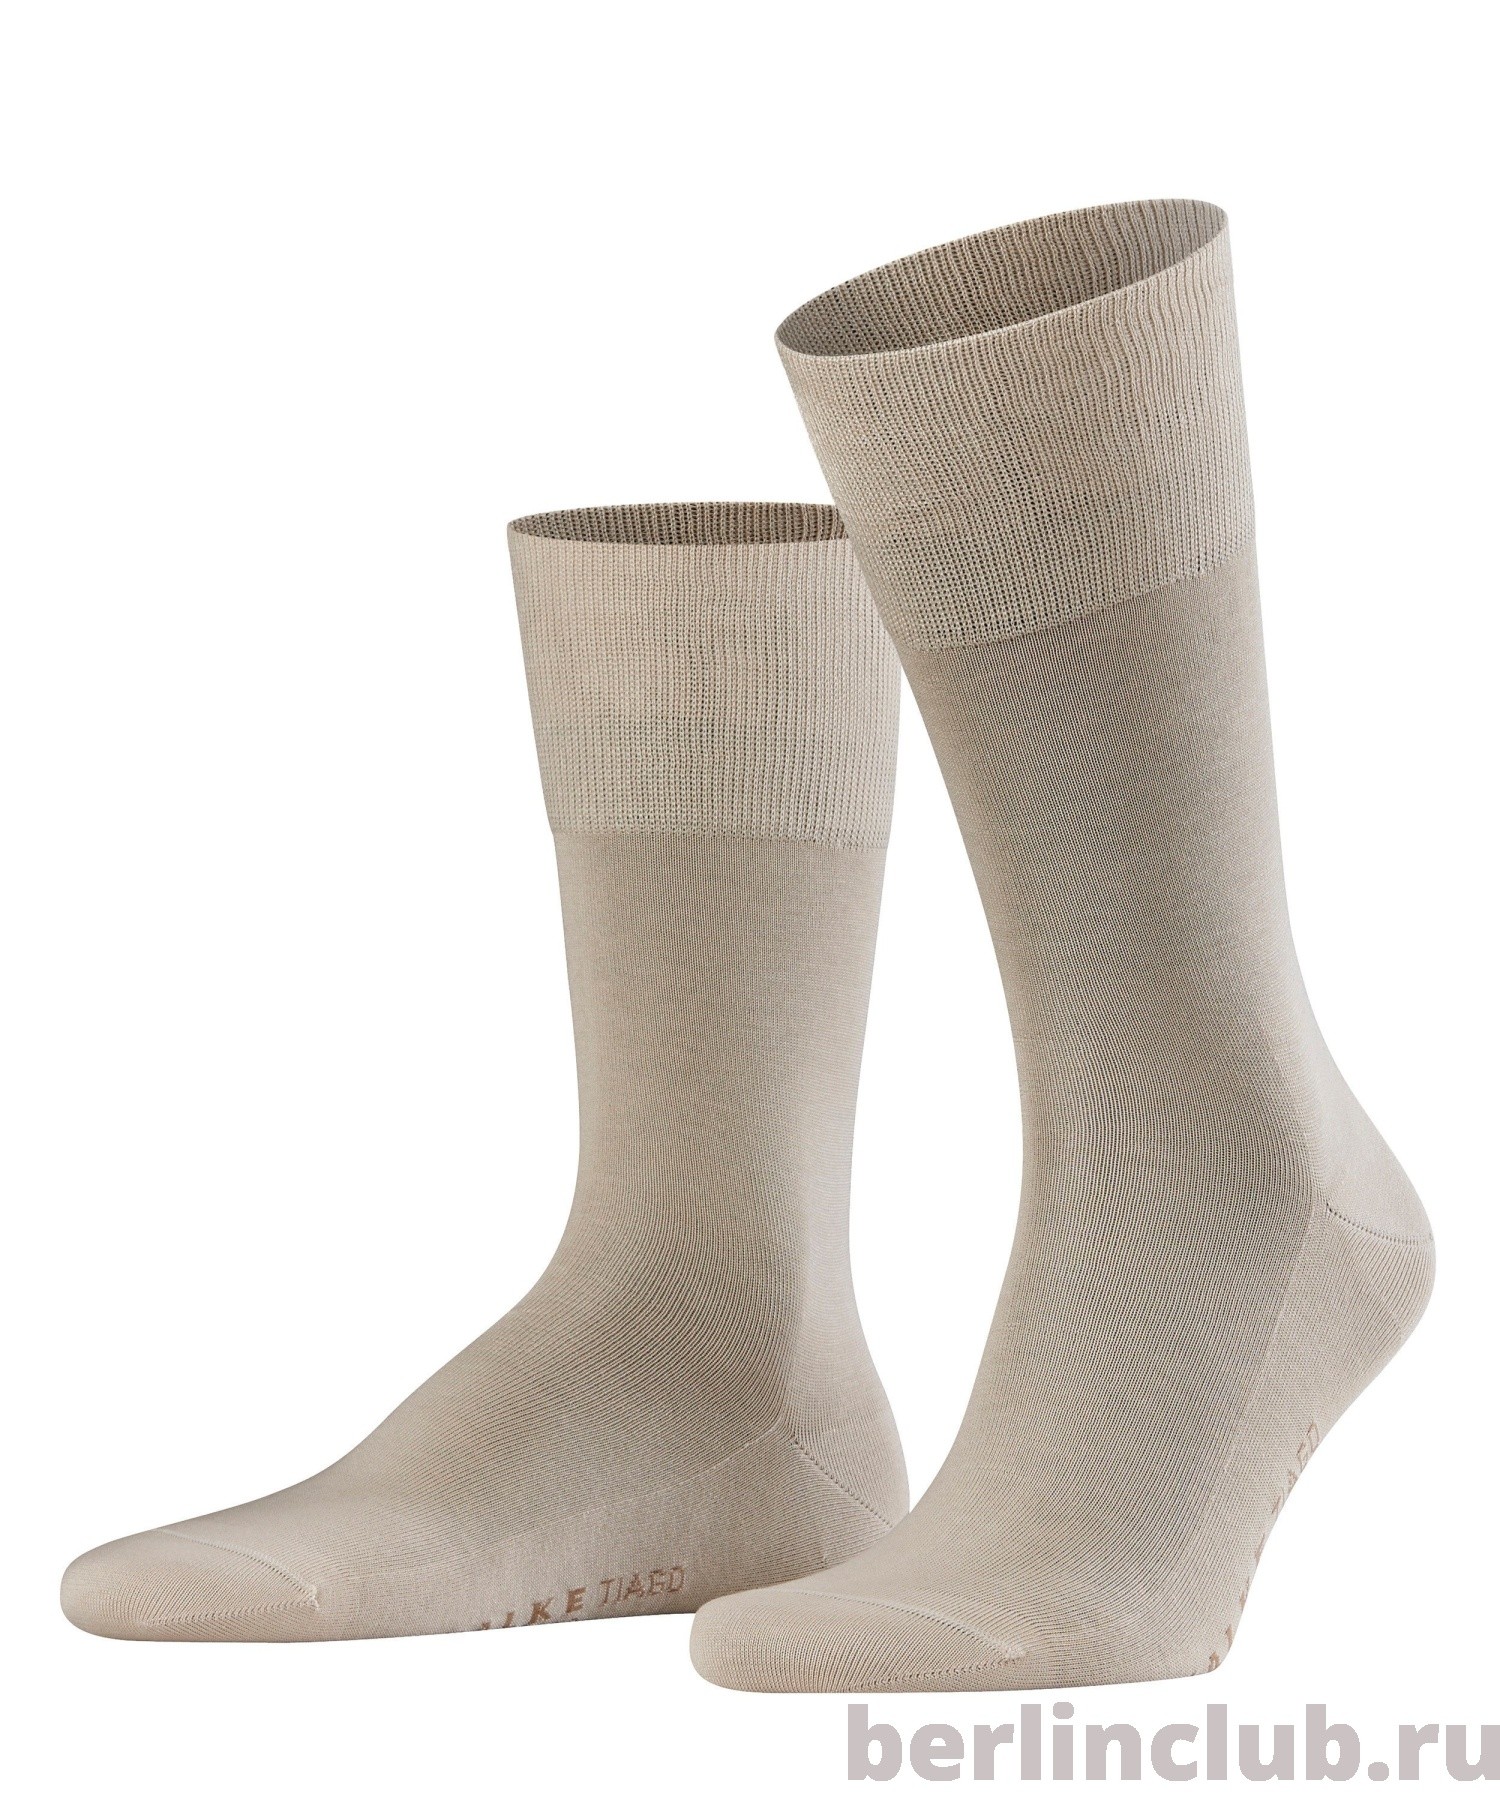 Хлопковые носки FALKE Tiago 14662 4000 - купить с доставкой по России, оплата при получении